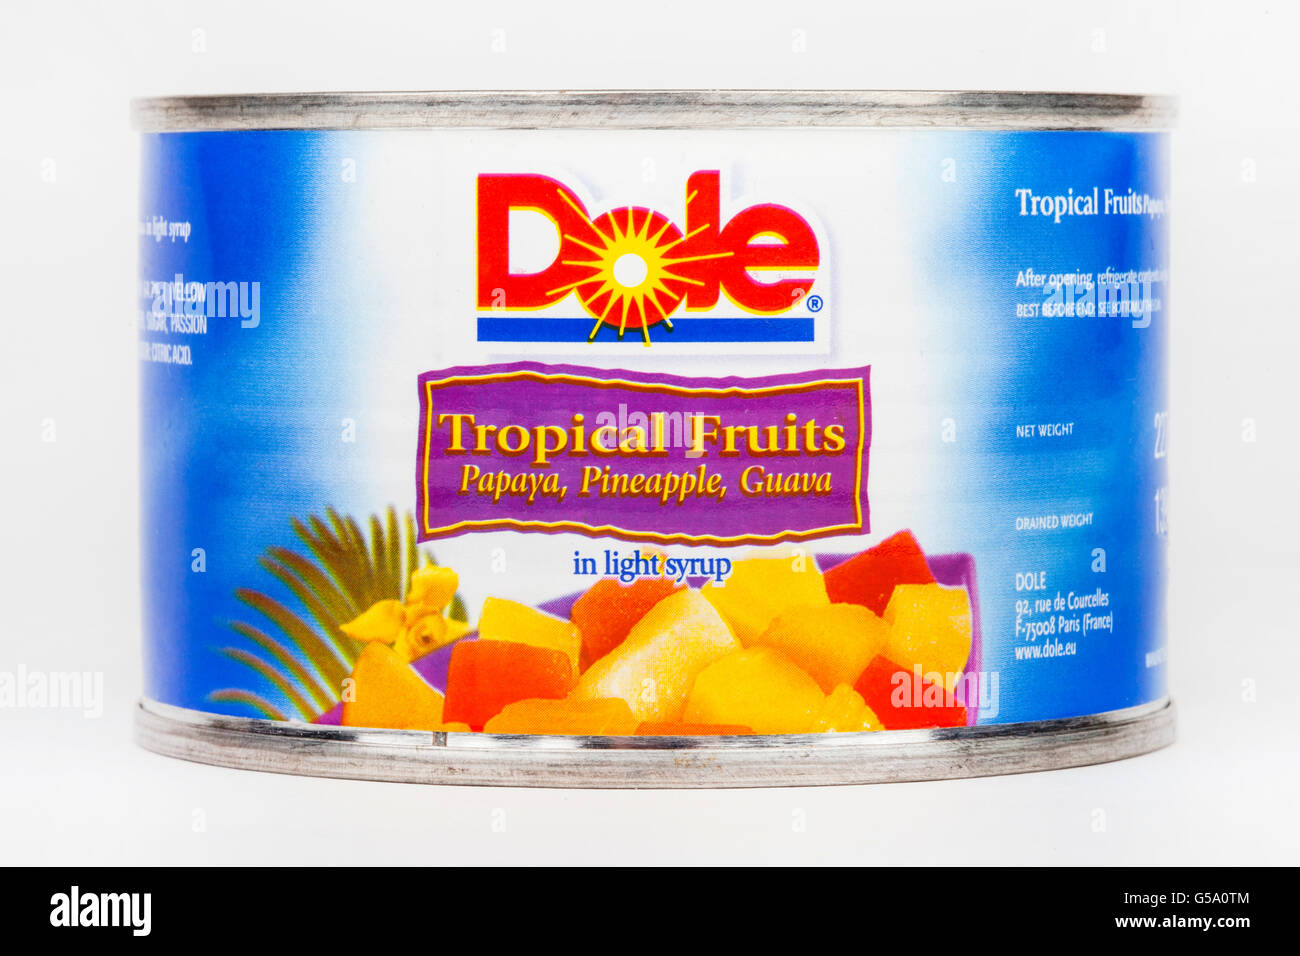 LONDON, UK - 16. Juni 2016: Eine Dose mit tropischen Früchten in Light Sirup von Dole Food Company, aufgenommen am 16. Juni 2016 produziert. Dole Stockfoto